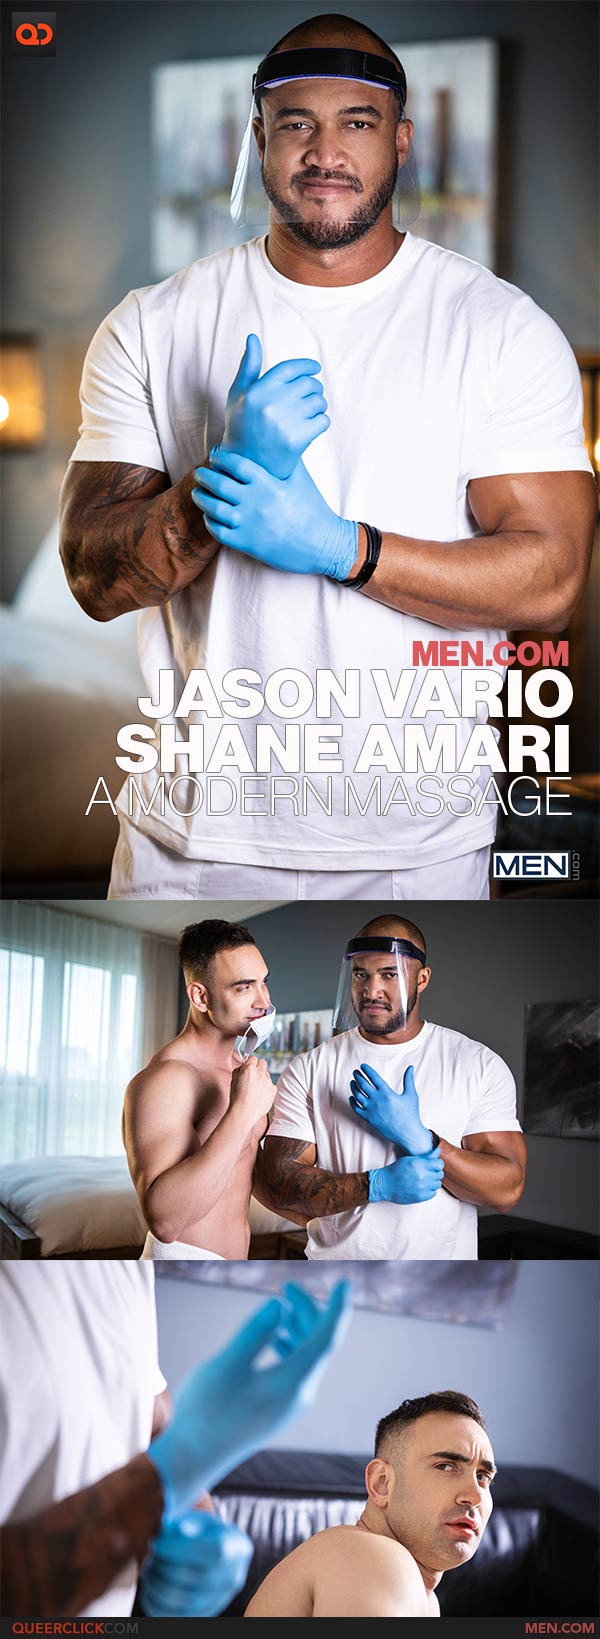 Men.com: Jason Vario and Shane Amari